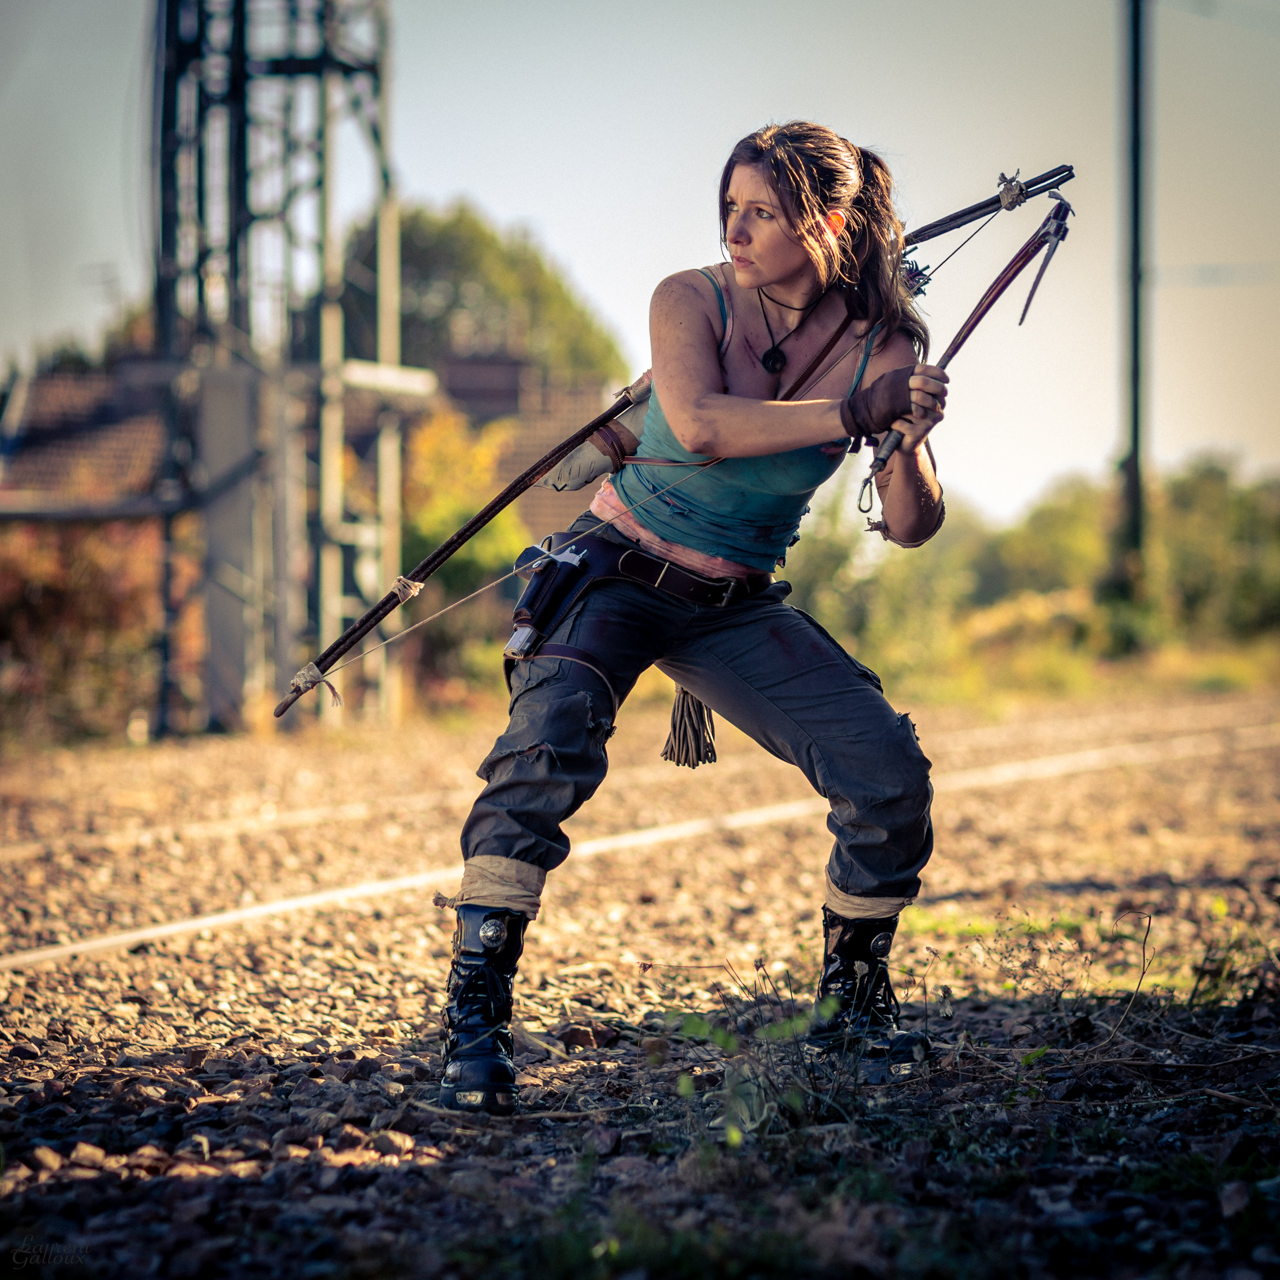 Lara Croft Tomb Raider cosplay by julietheadventurer on DeviantArt